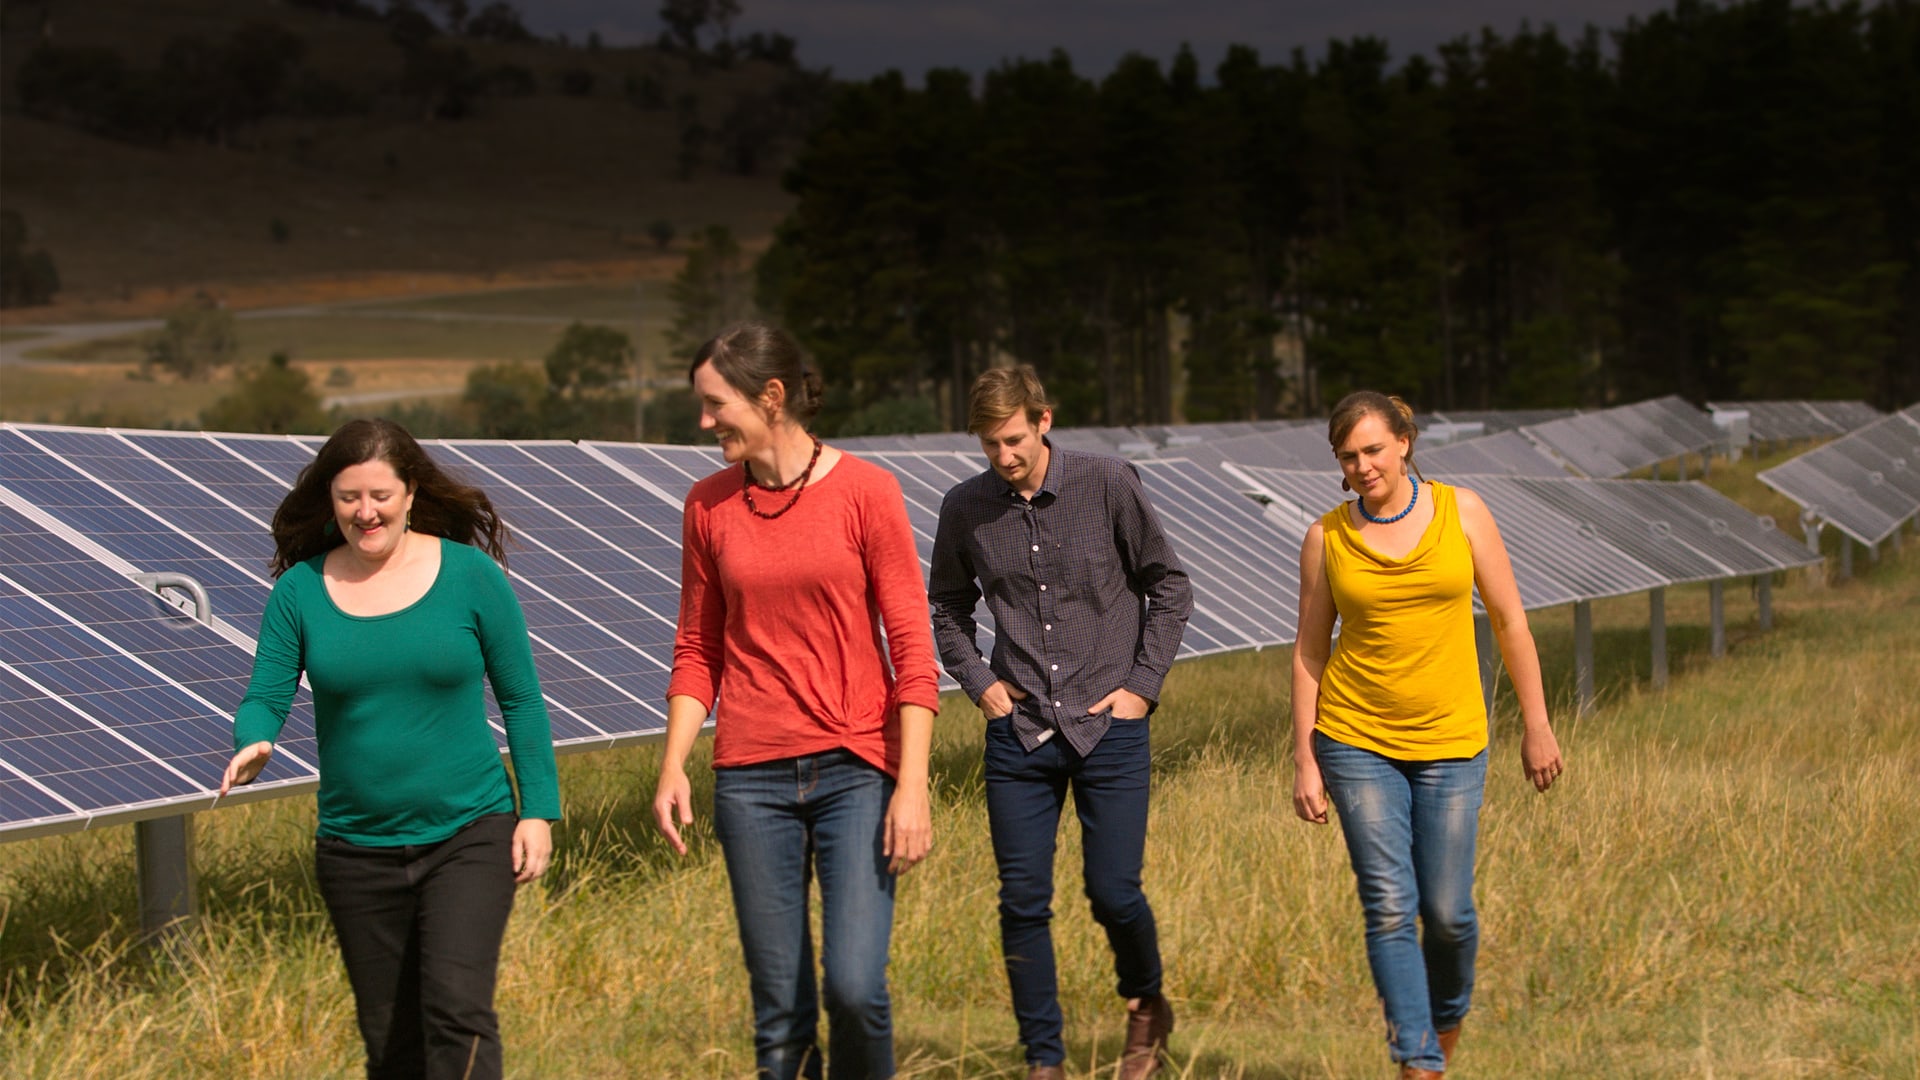 CPA Directors at a community solar farm